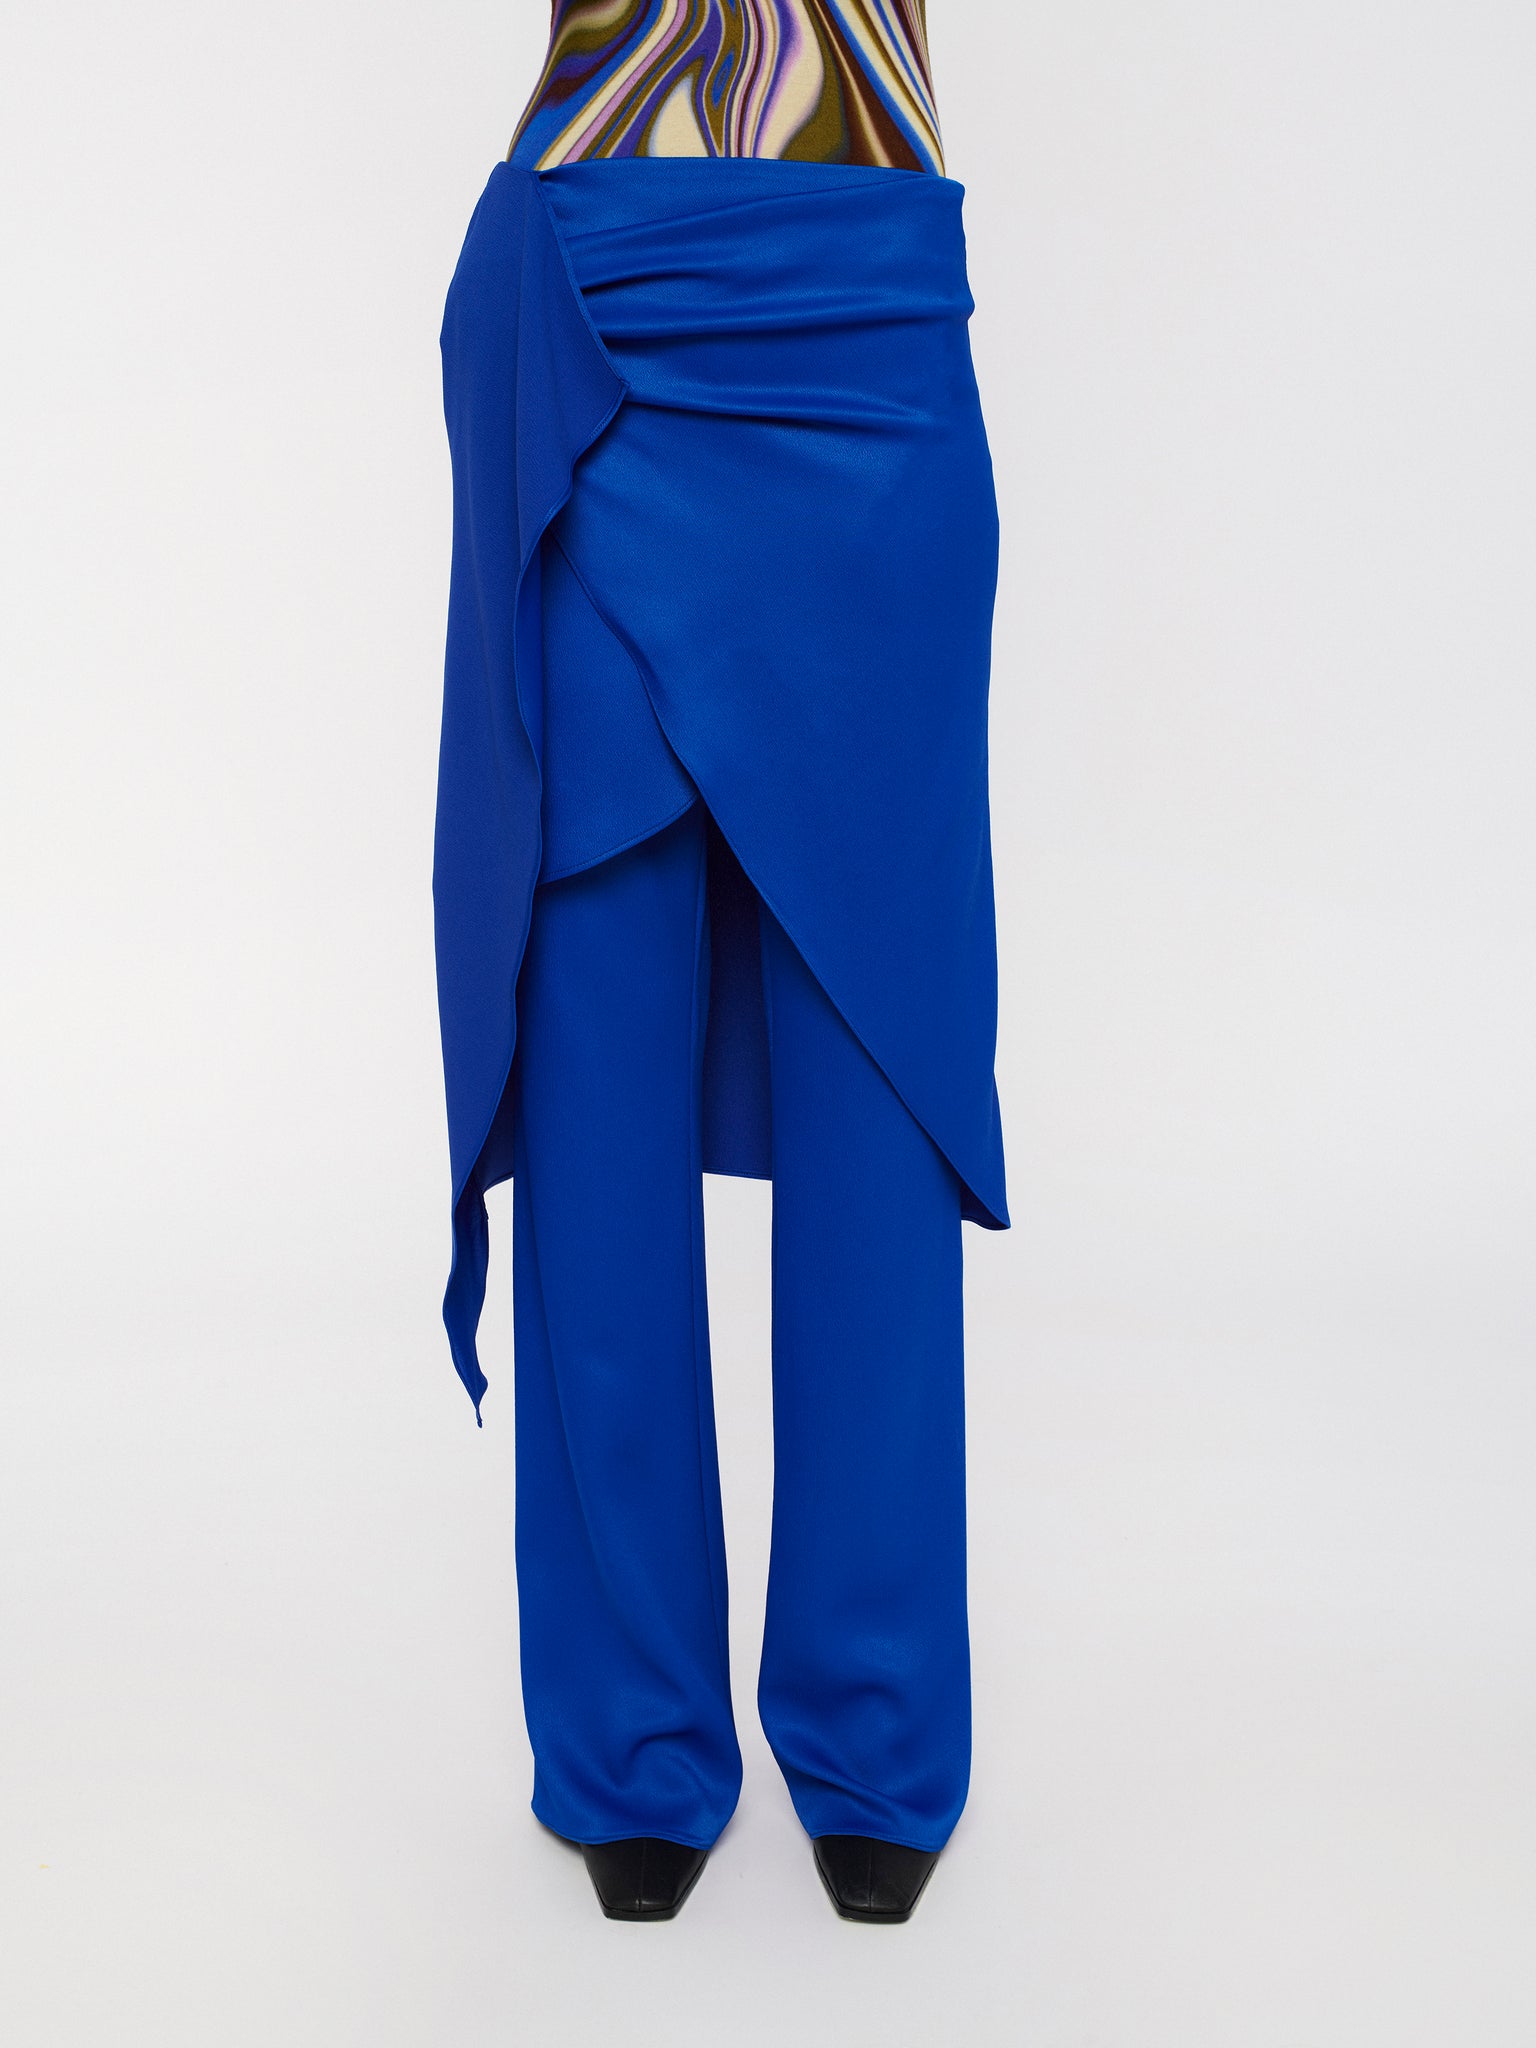 ELONA wrap skirt - cobalt blue